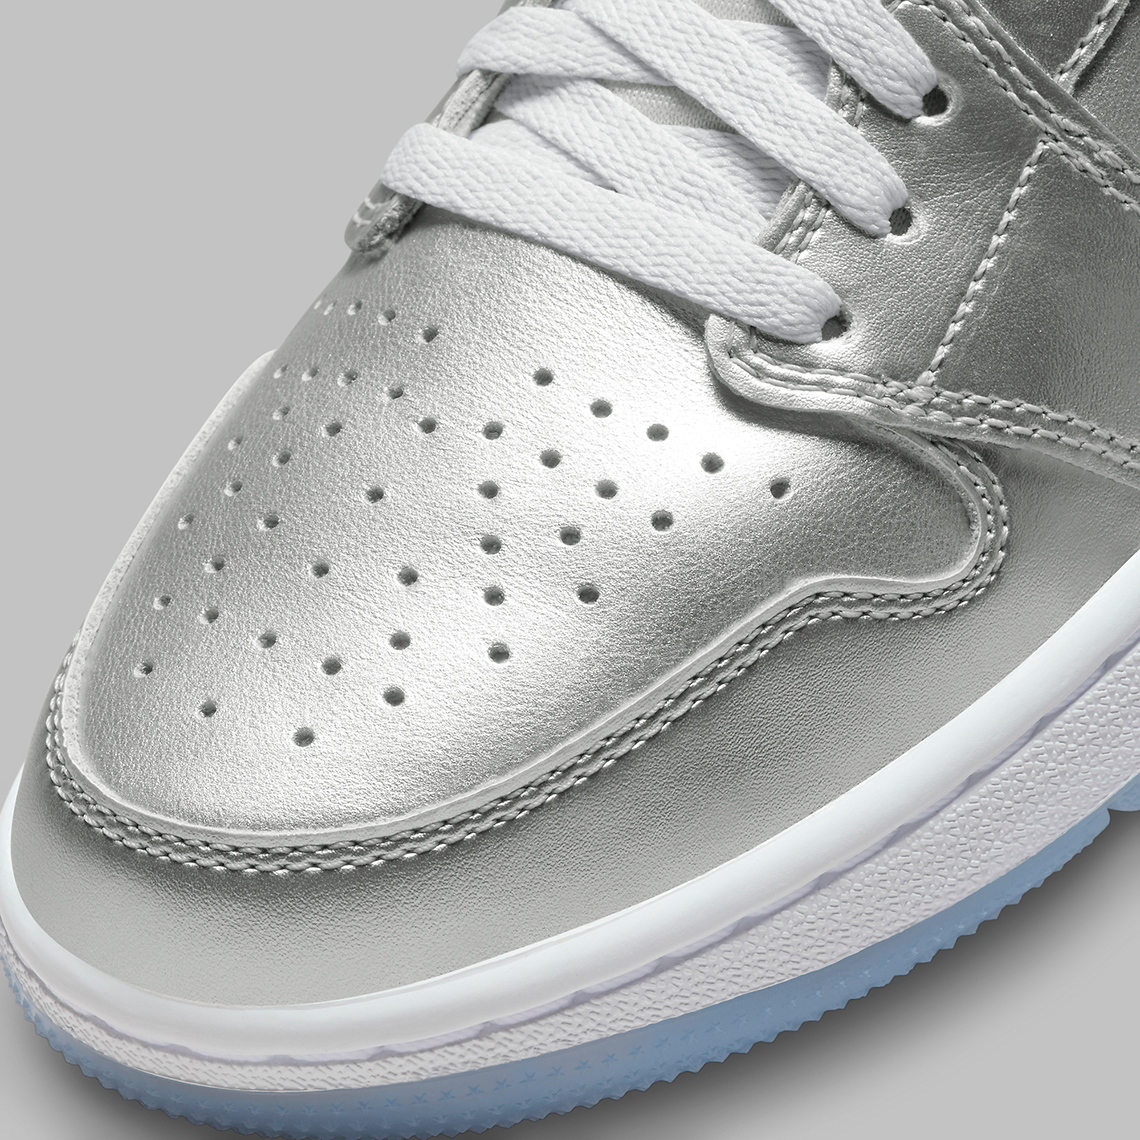 Air Jordan XXXIV Zapatillas de baloncesto Niño a Blanco Metallic Silver Chrome Gift Giving Fd6815 001 1